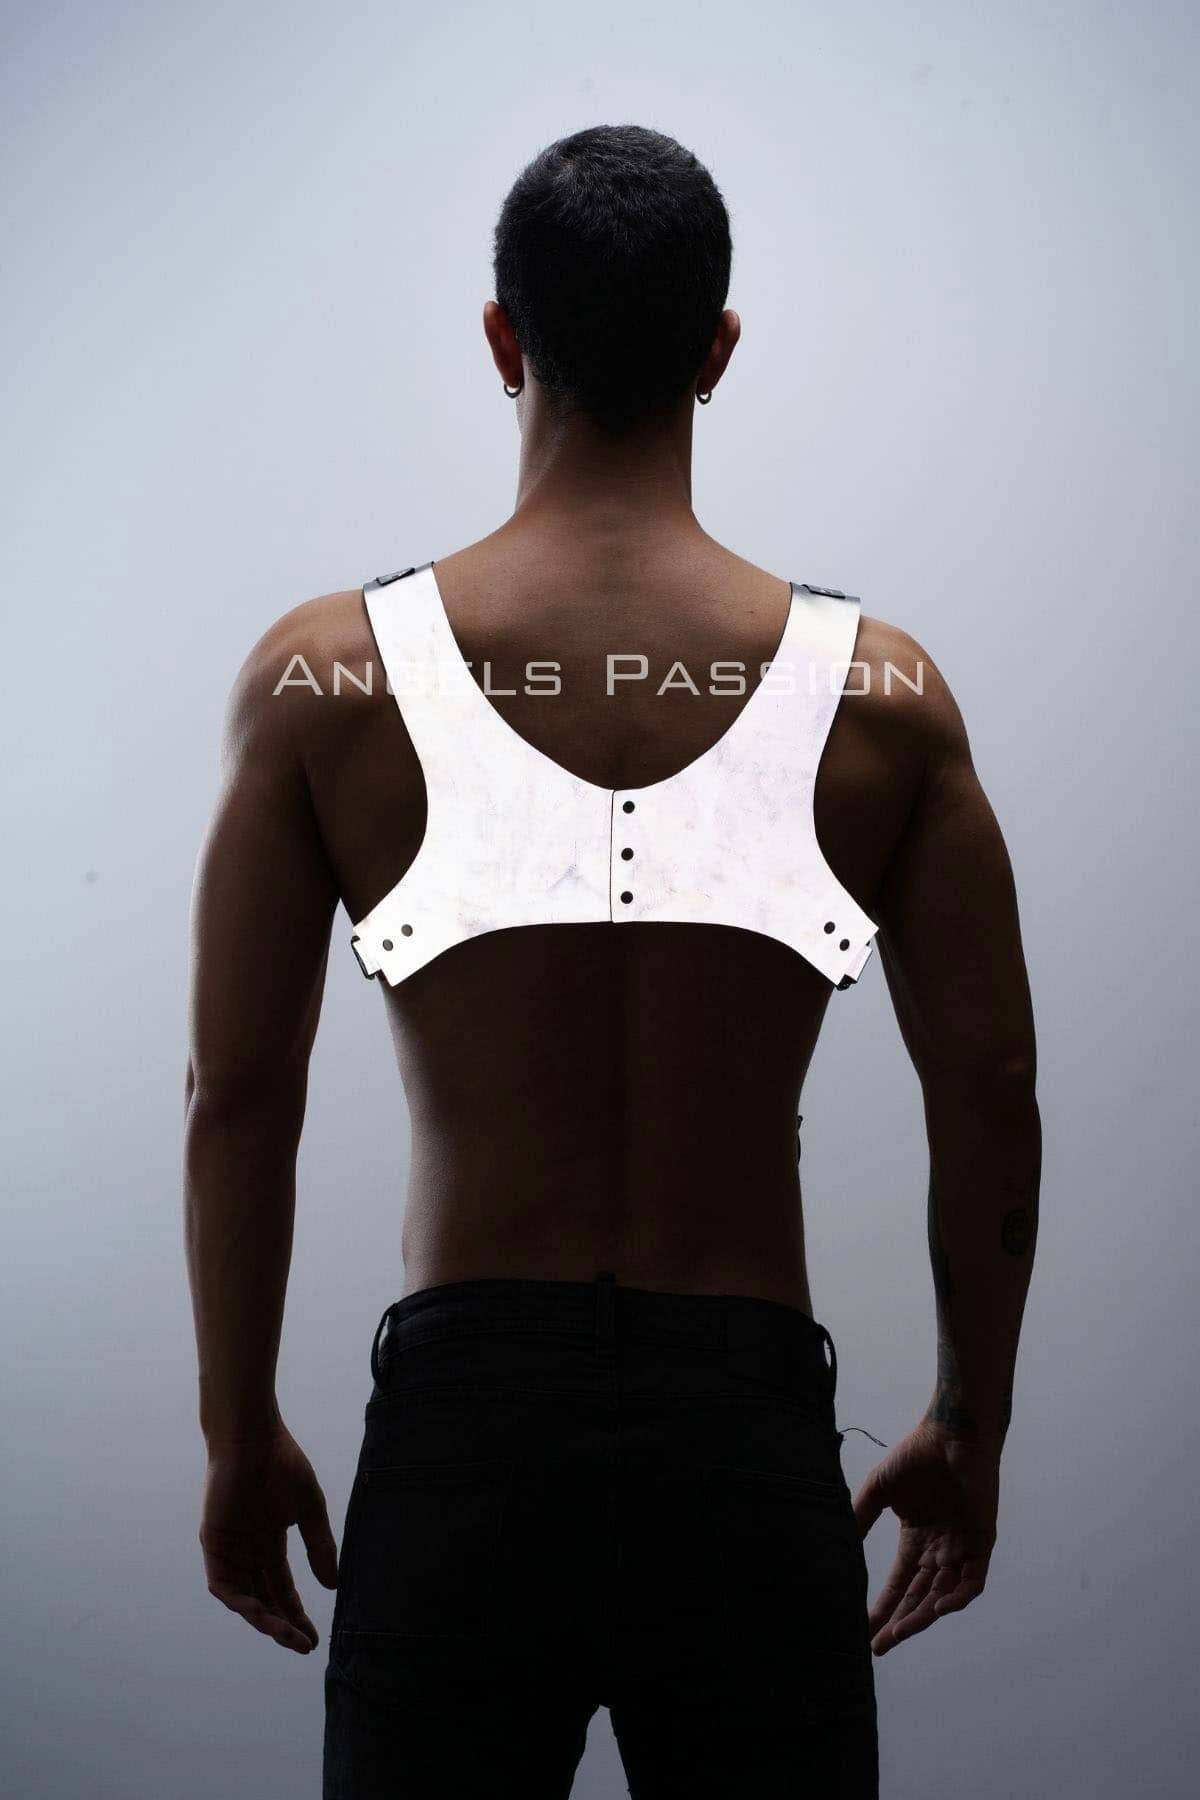 CLZ41 Karanlıkta ParlayanReflektörlü Pantolon Askısı, Erkek Göğüs HarnessReflektörlü Clubwear - Ürün Rengi:Beyaz Reflektör